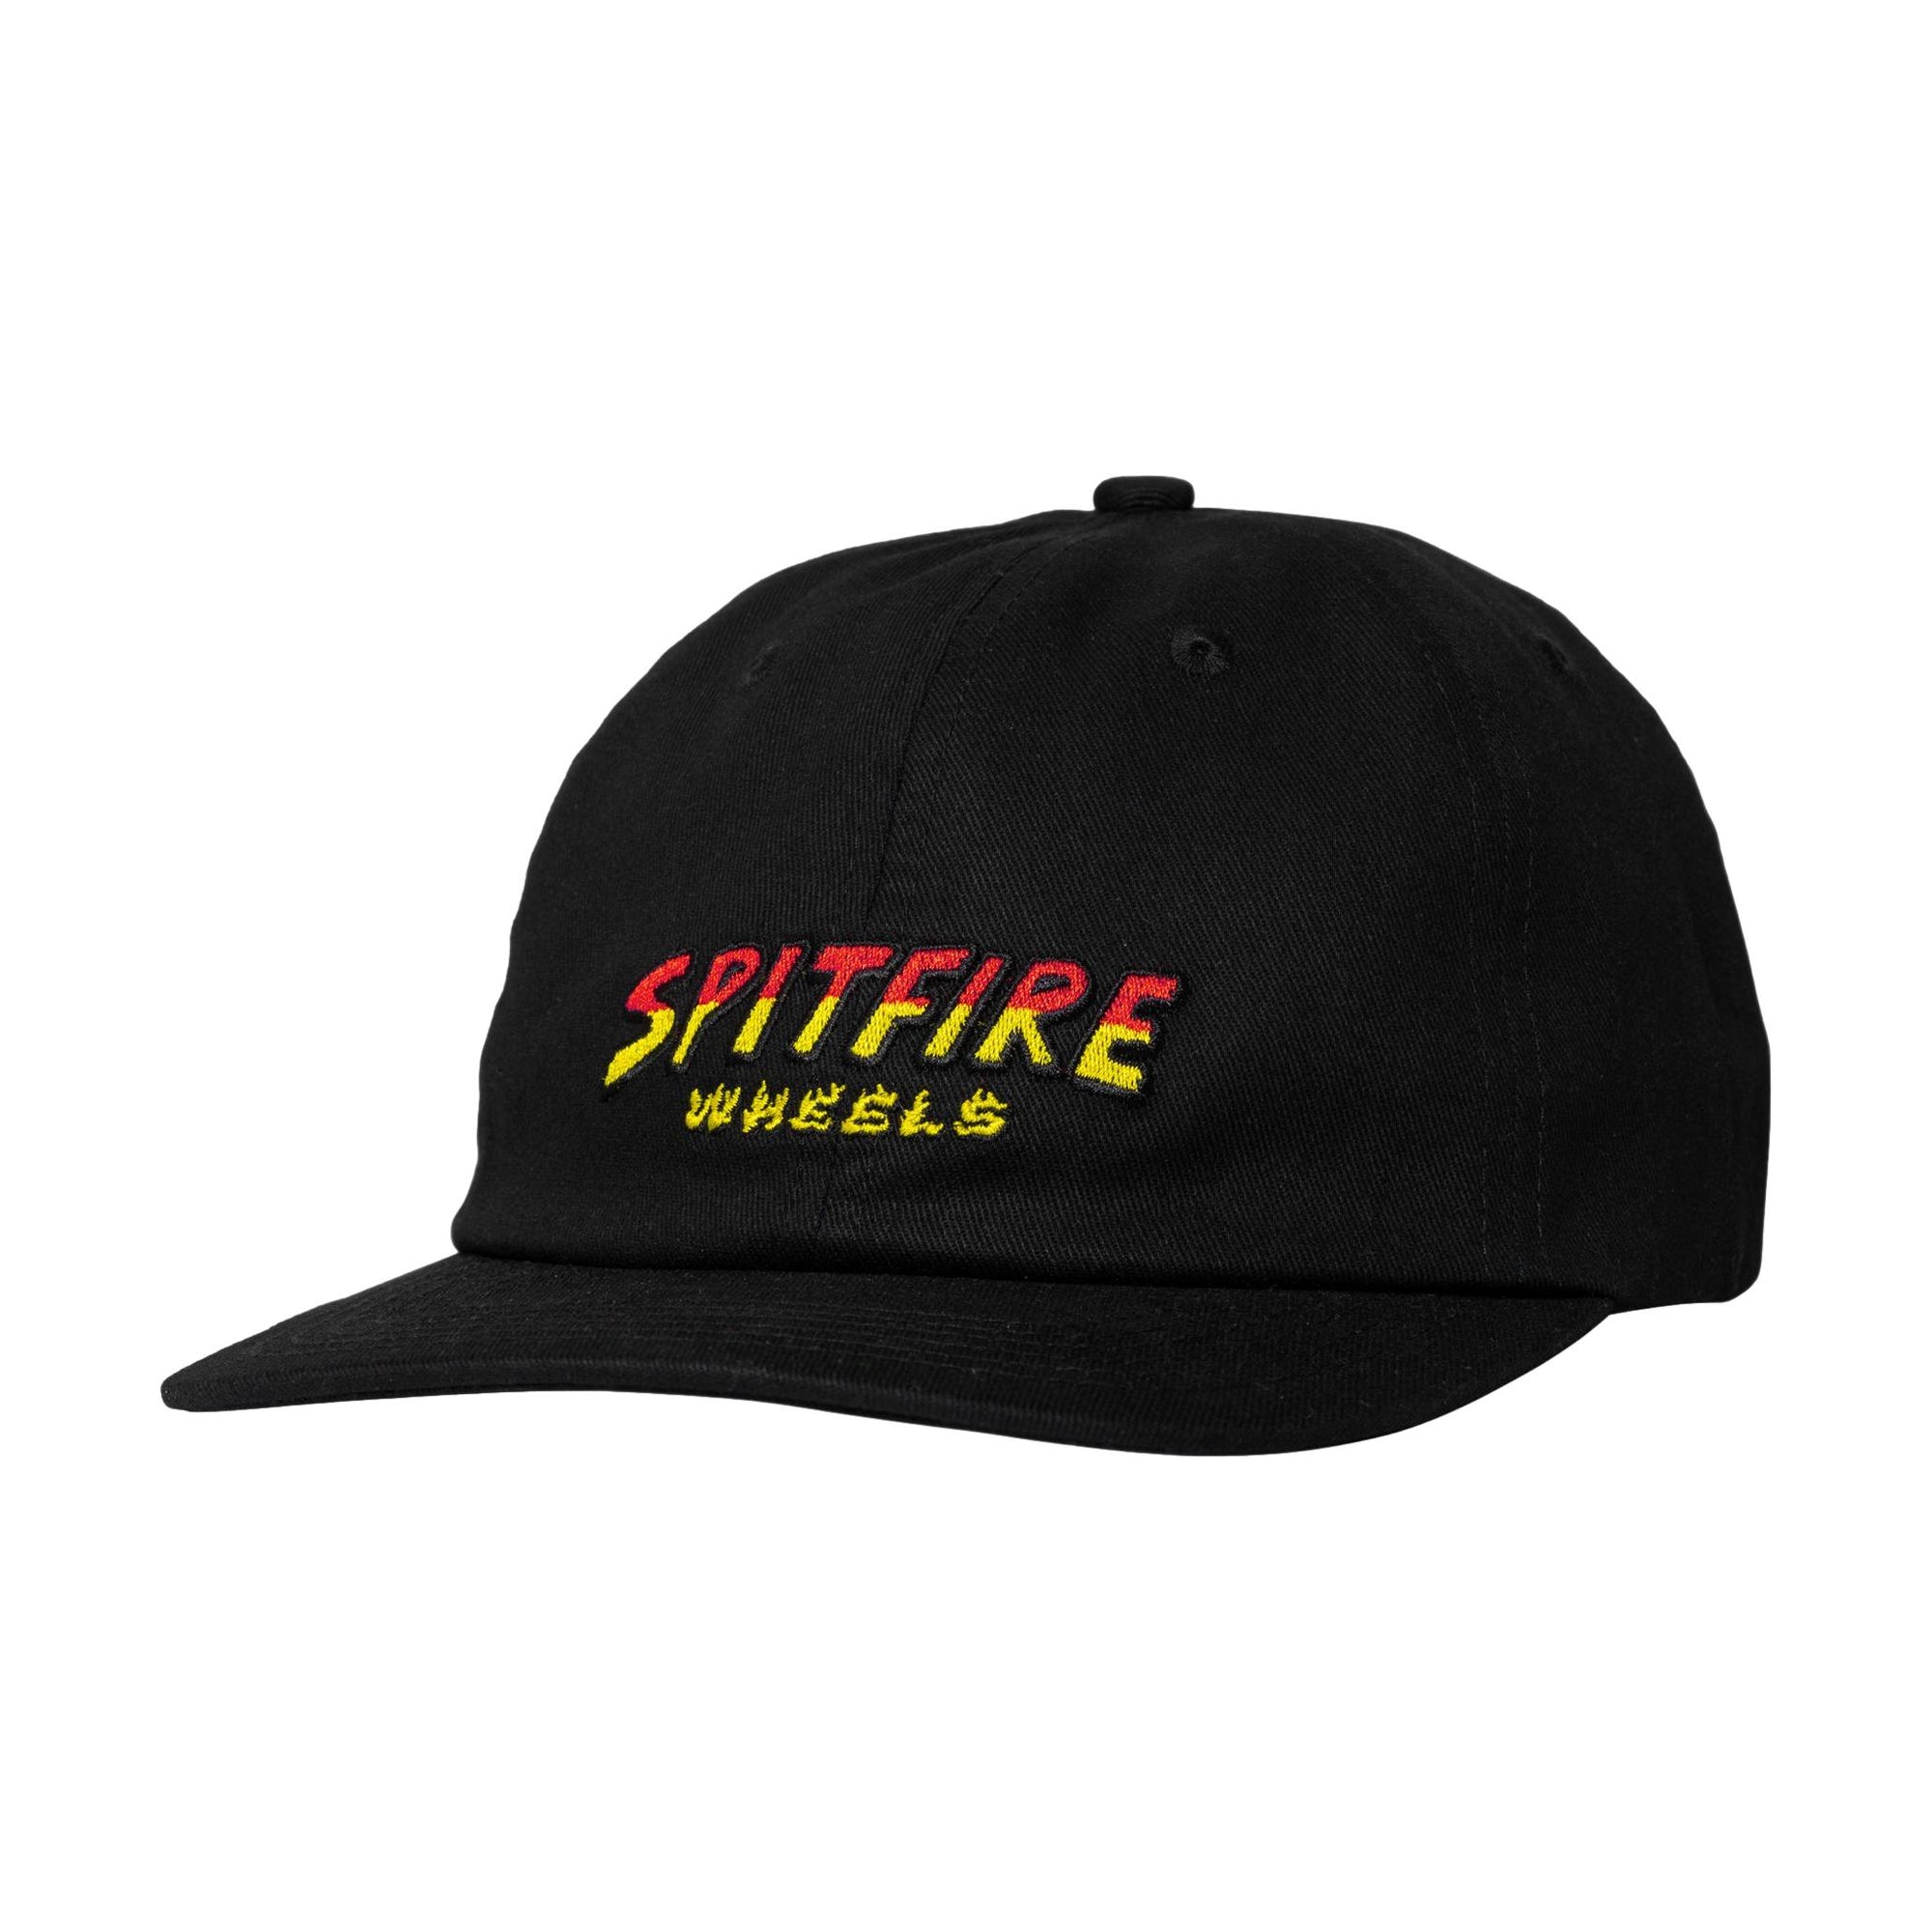 Spitfire Hell Hound Script Adjustable Snapback Hat Black - Venue Skateboards